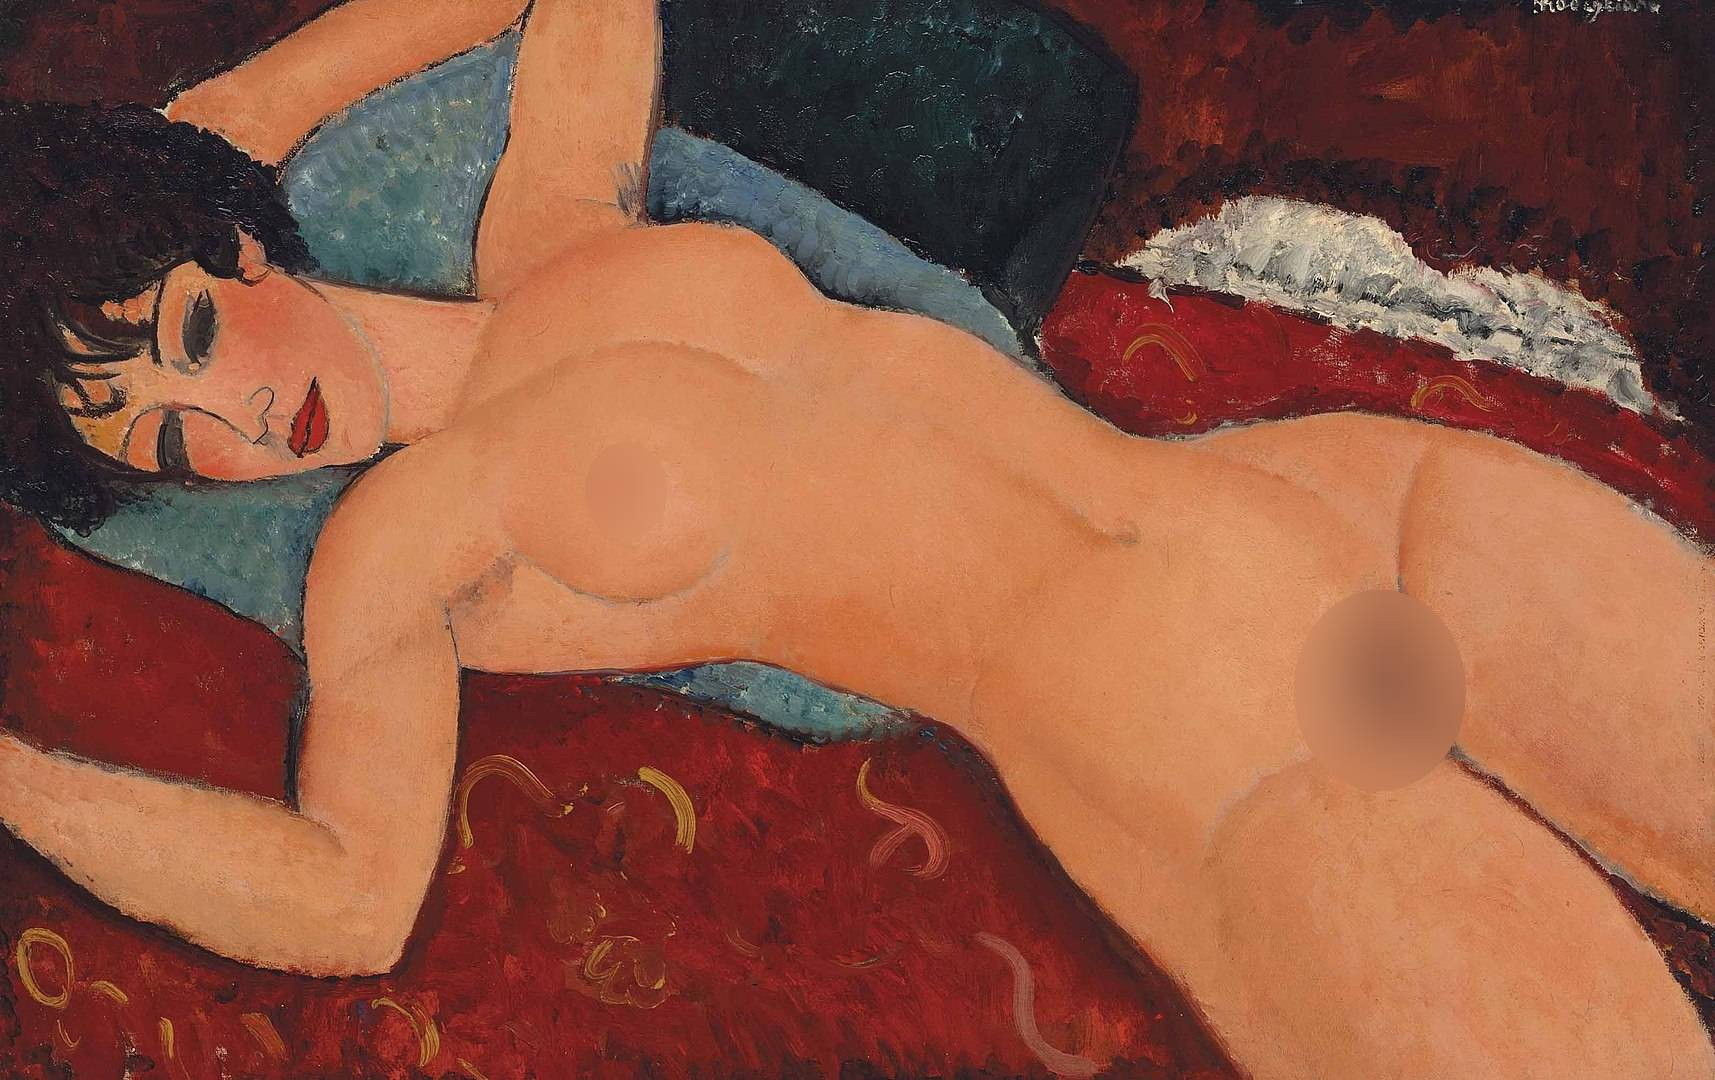 Khỏa thân trong hội họa hiện đại lột xác nhờ một bộ tranh bị tuýt còi - 5